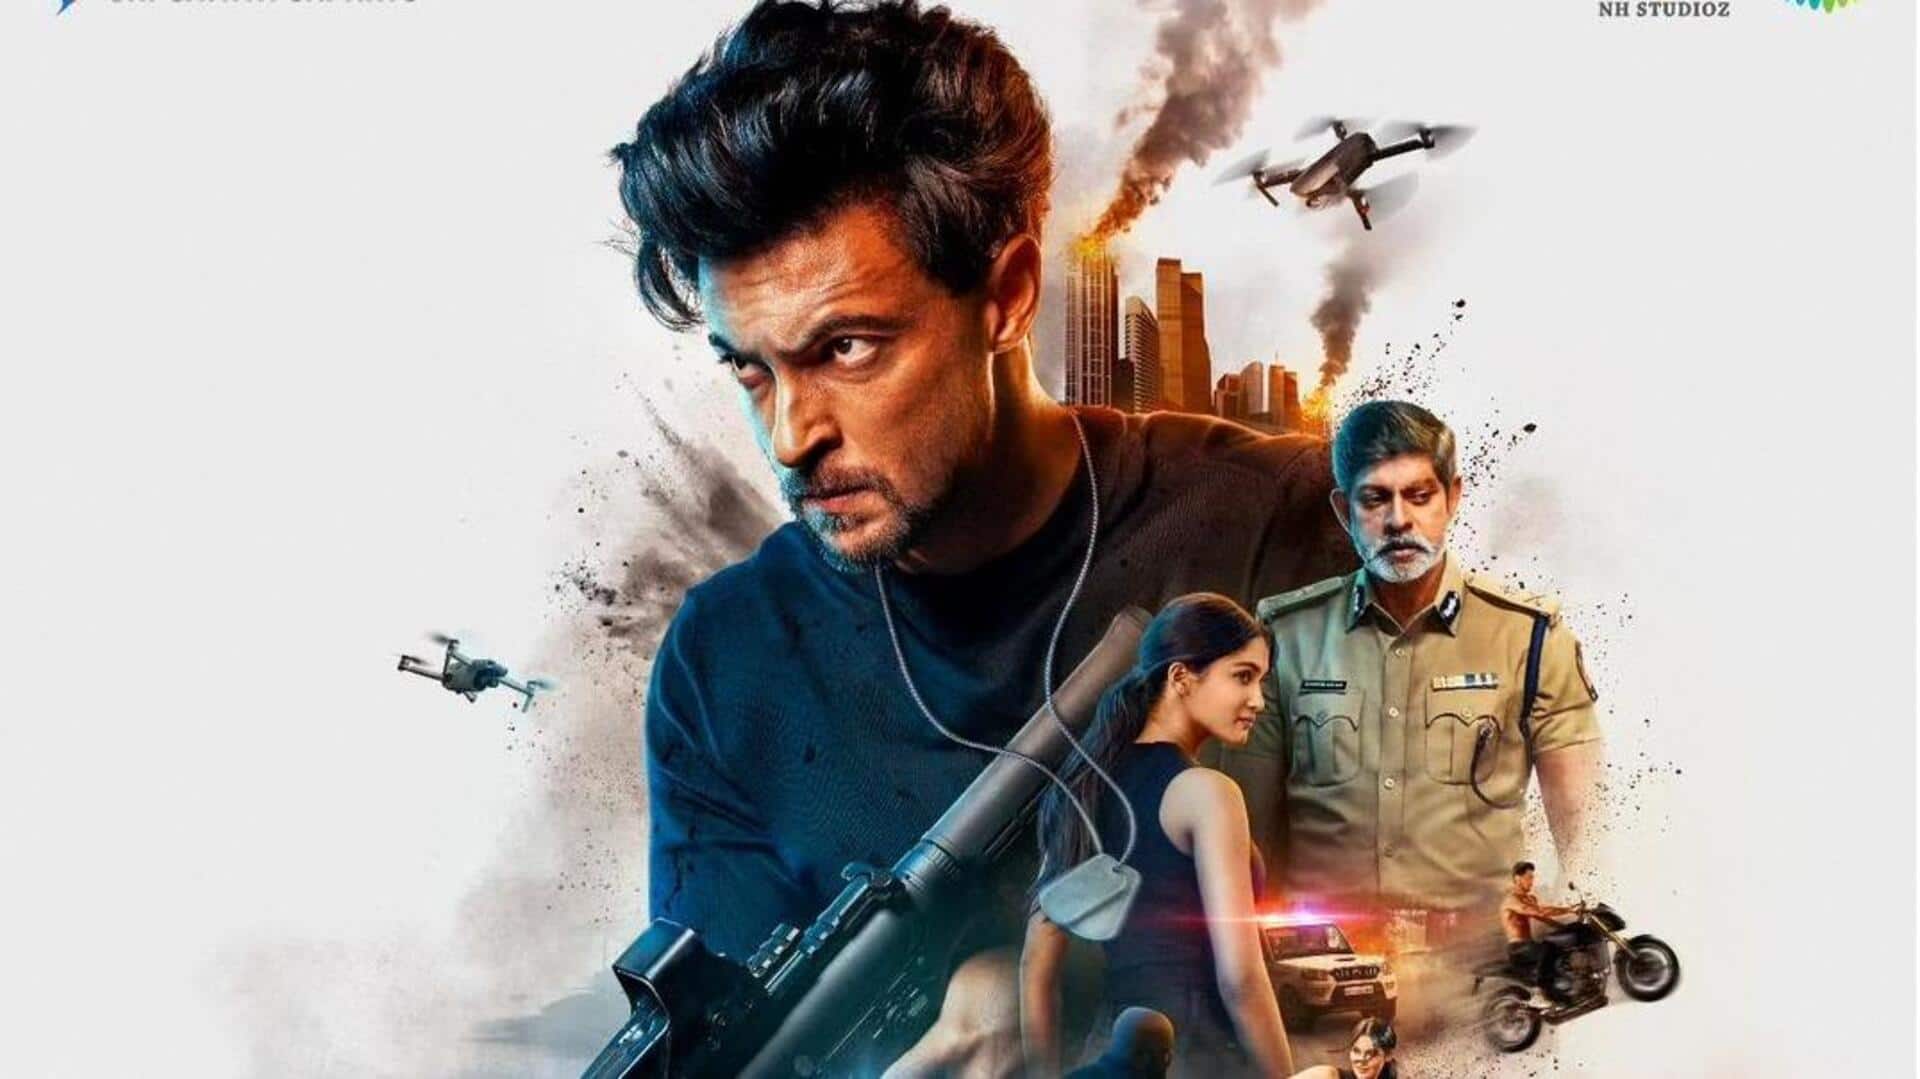 बॉक्स ऑफिस पर 'रुसलान' ने तोड़ा दम, आयुष शर्मा की फिल्म पर लगा 'फ्लॉप' का ठप्पा